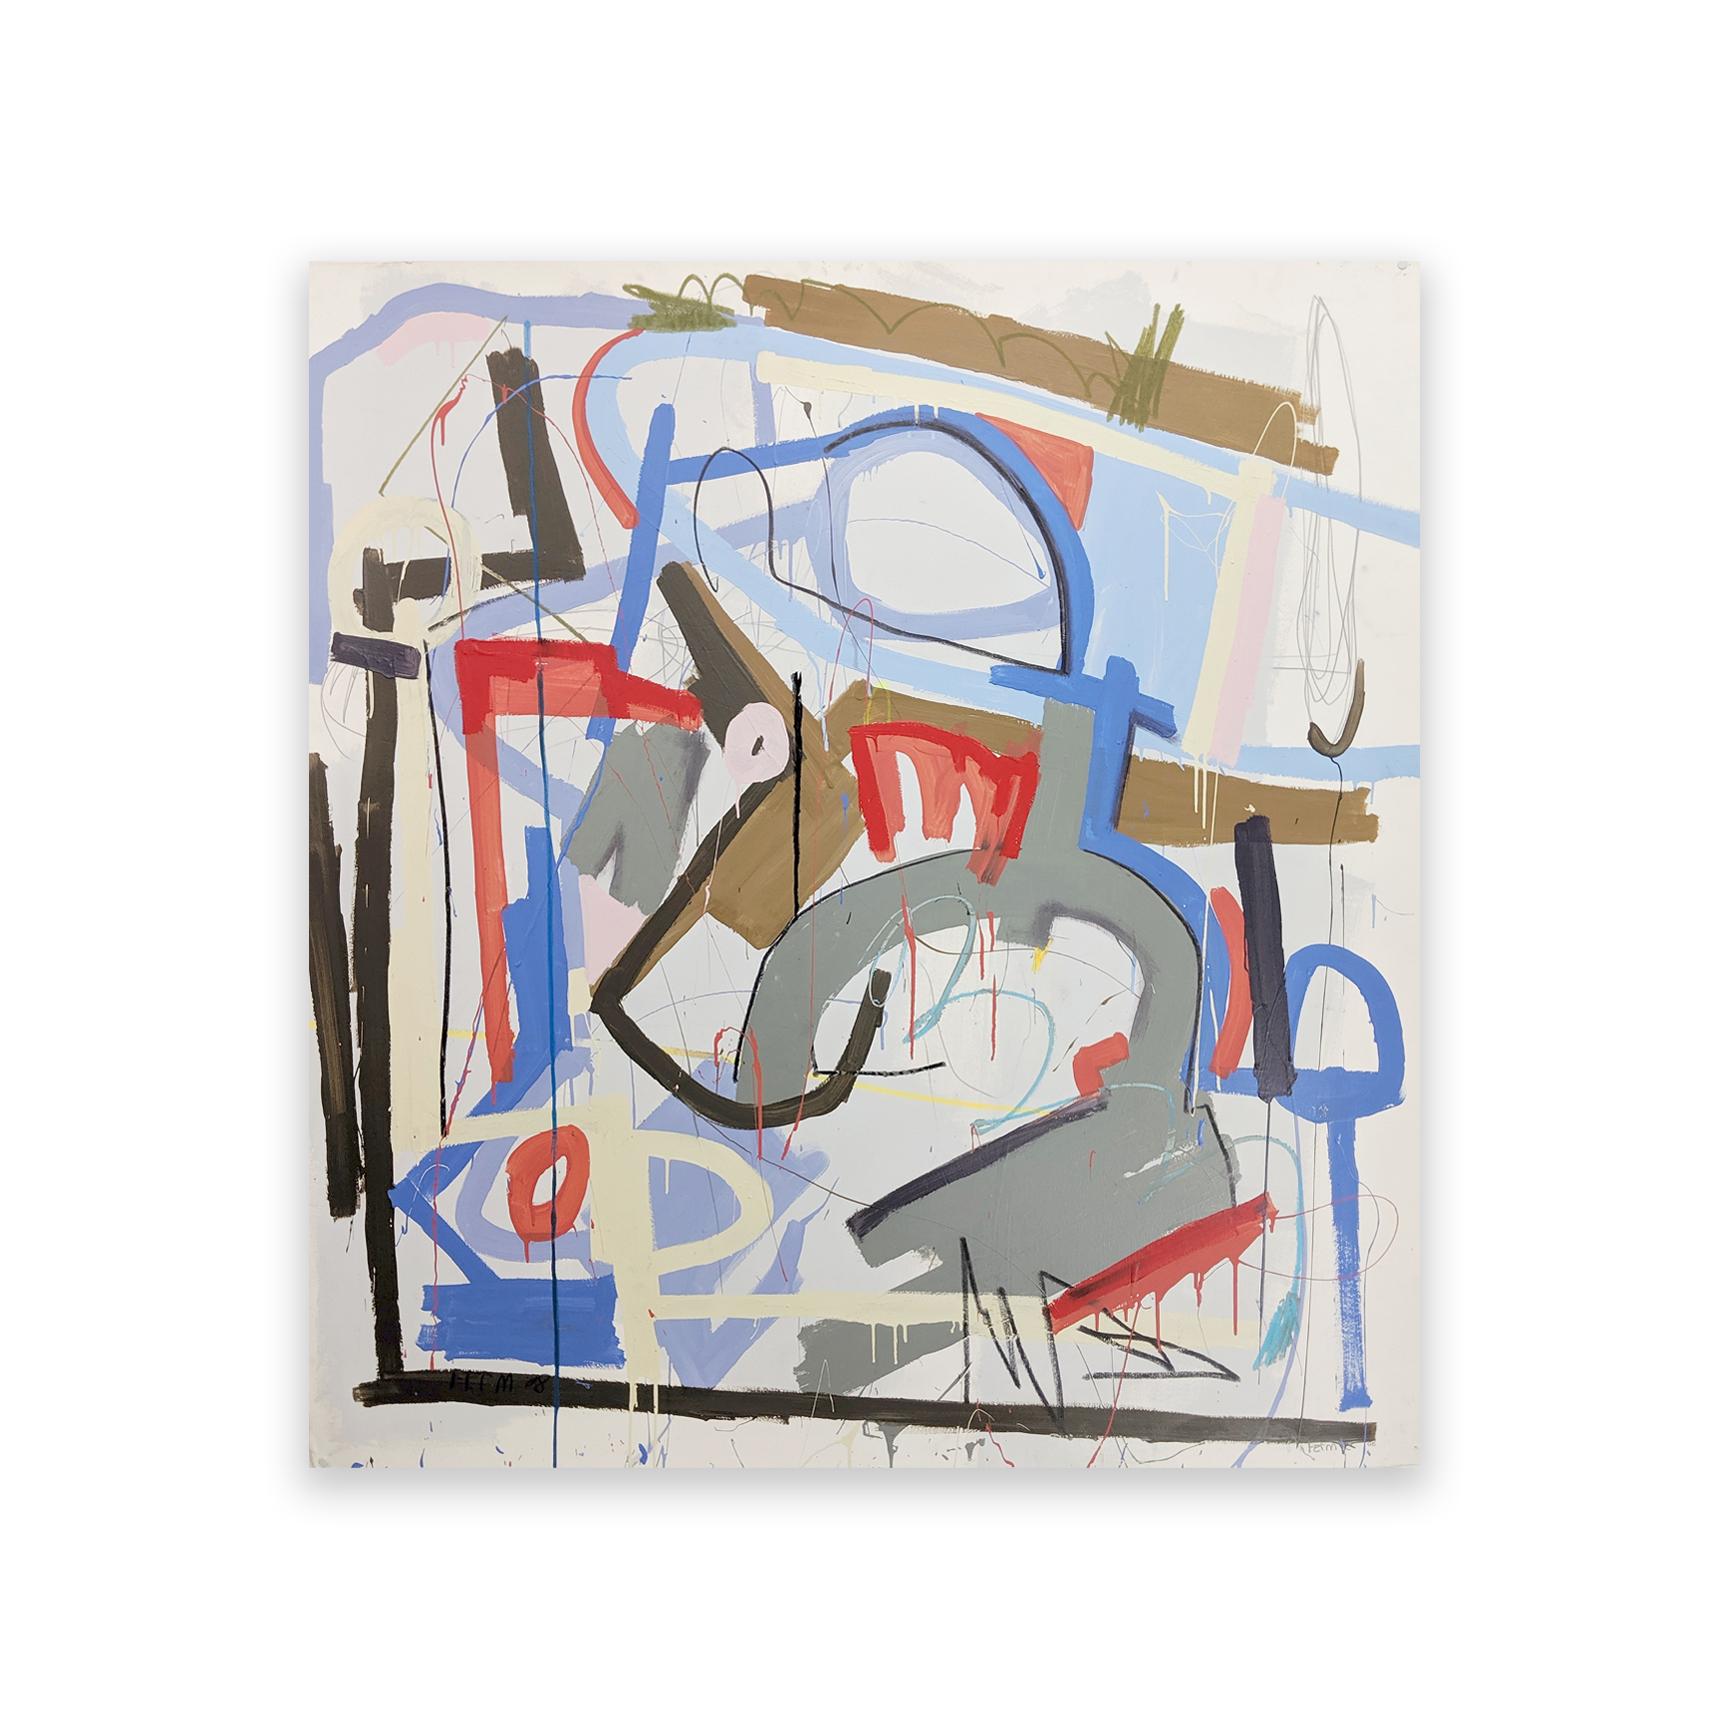 Yetty von Joseph Conrad-Ferm, 2008
Gemischte Medien 
54 × 51in 
137.2 × 129.5cm 

Abstraktes Gemälde in Mischtechnik auf Aquarellpapier des in New York lebenden Künstlers Joseph Conrad-Ferm. 

Der Versand ist nicht inbegriffen. Siehe unsere